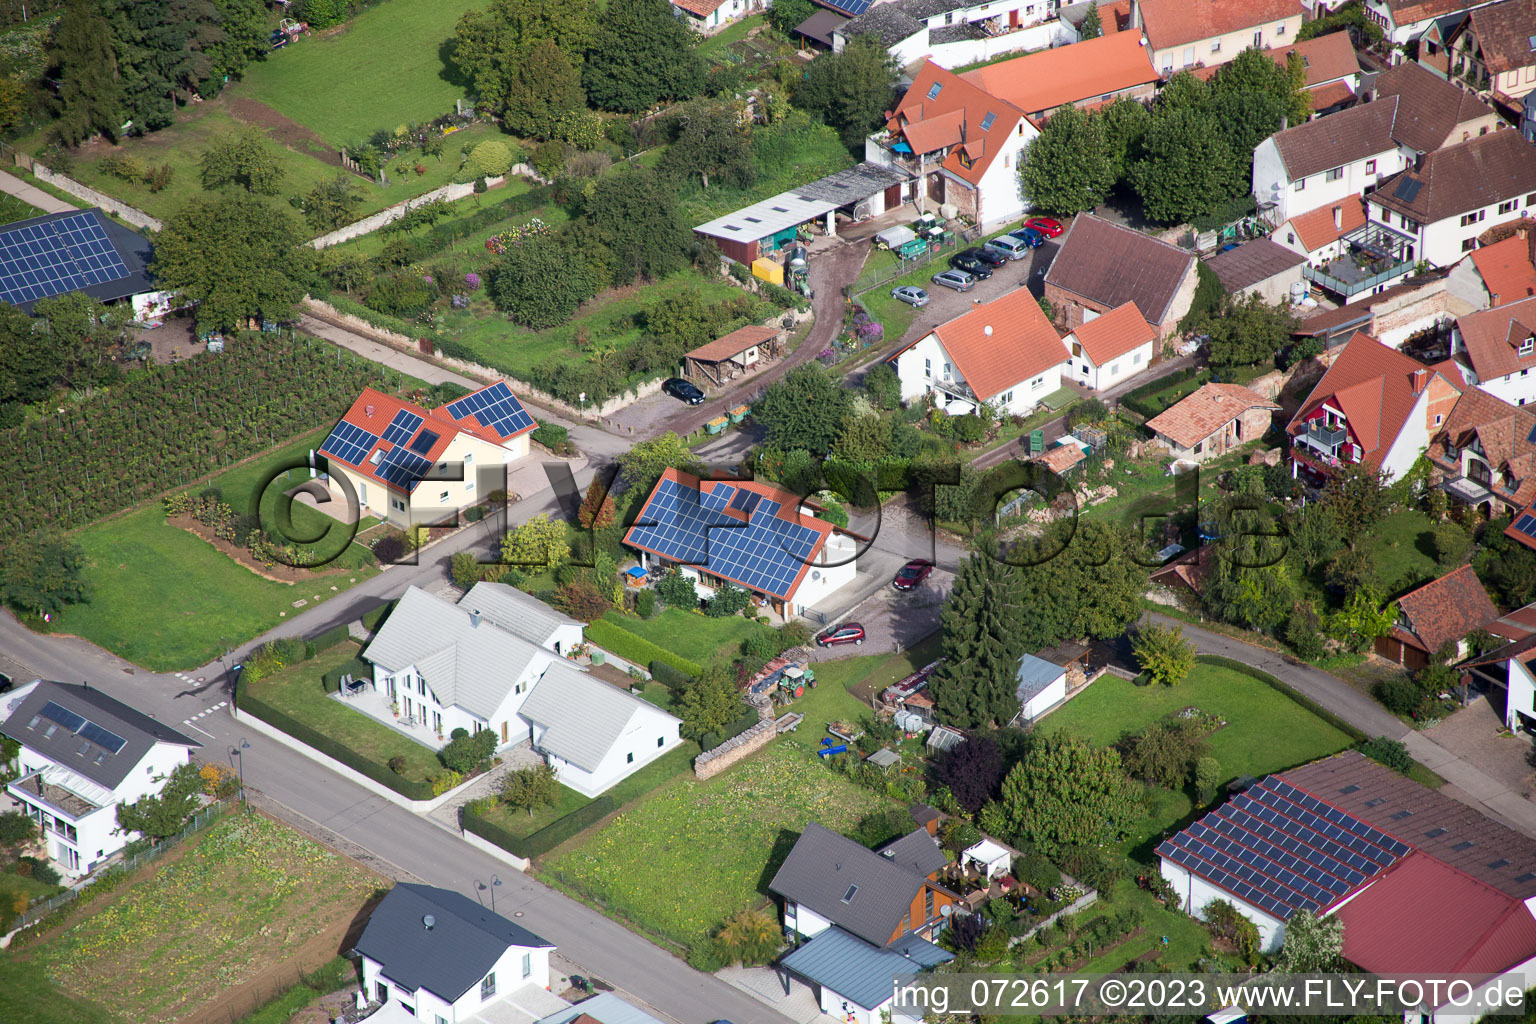 District Heuchelheim in Heuchelheim-Klingen in the state Rhineland-Palatinate, Germany seen from a drone